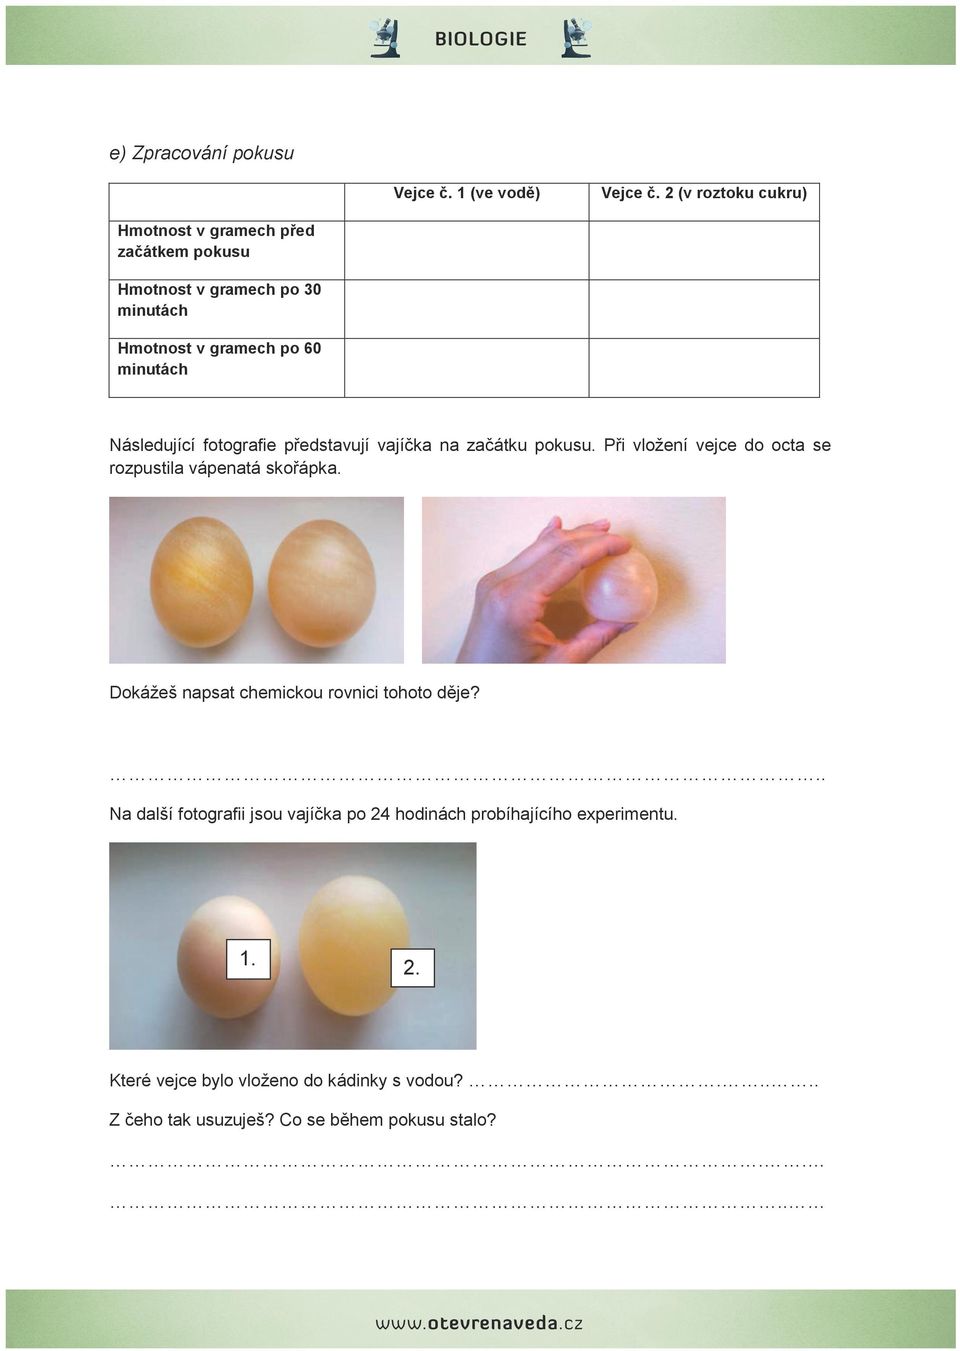 Následující fotografie představují vajíčka na začátku pokusu. Při vložení vejce do octa se rozpustila vápenatá skořápka.